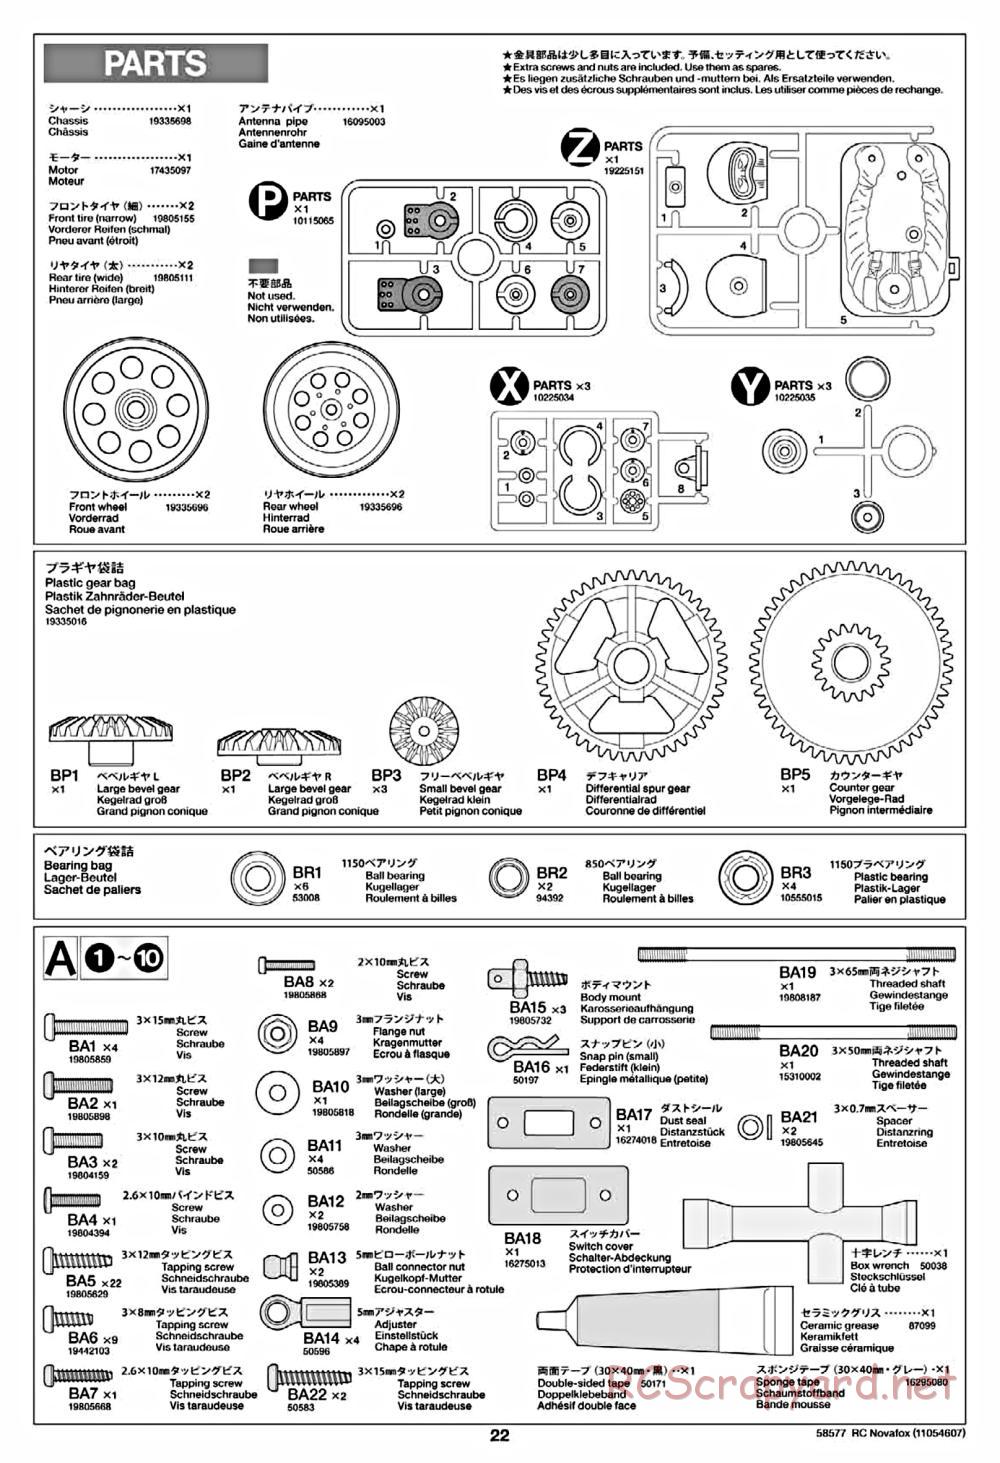 Tamiya - Novafox Chassis - Manual - Page 22